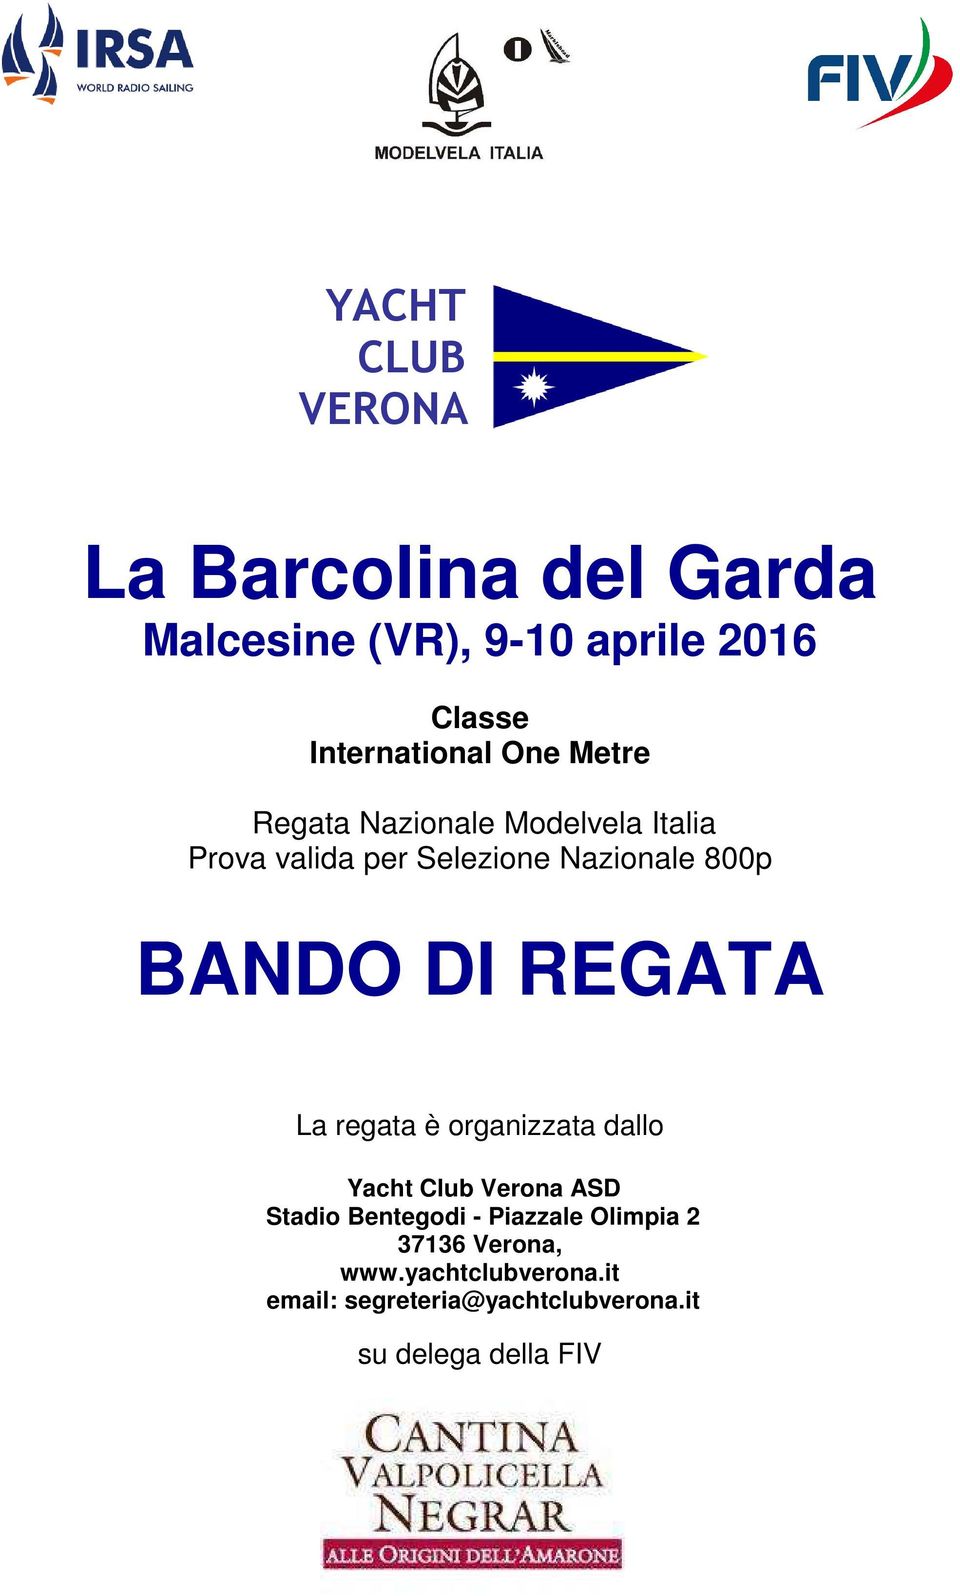 REGATA La regata è organizzata dallo Yacht Club Verona ASD Stadio Bentegodi - Piazzale Olimpia